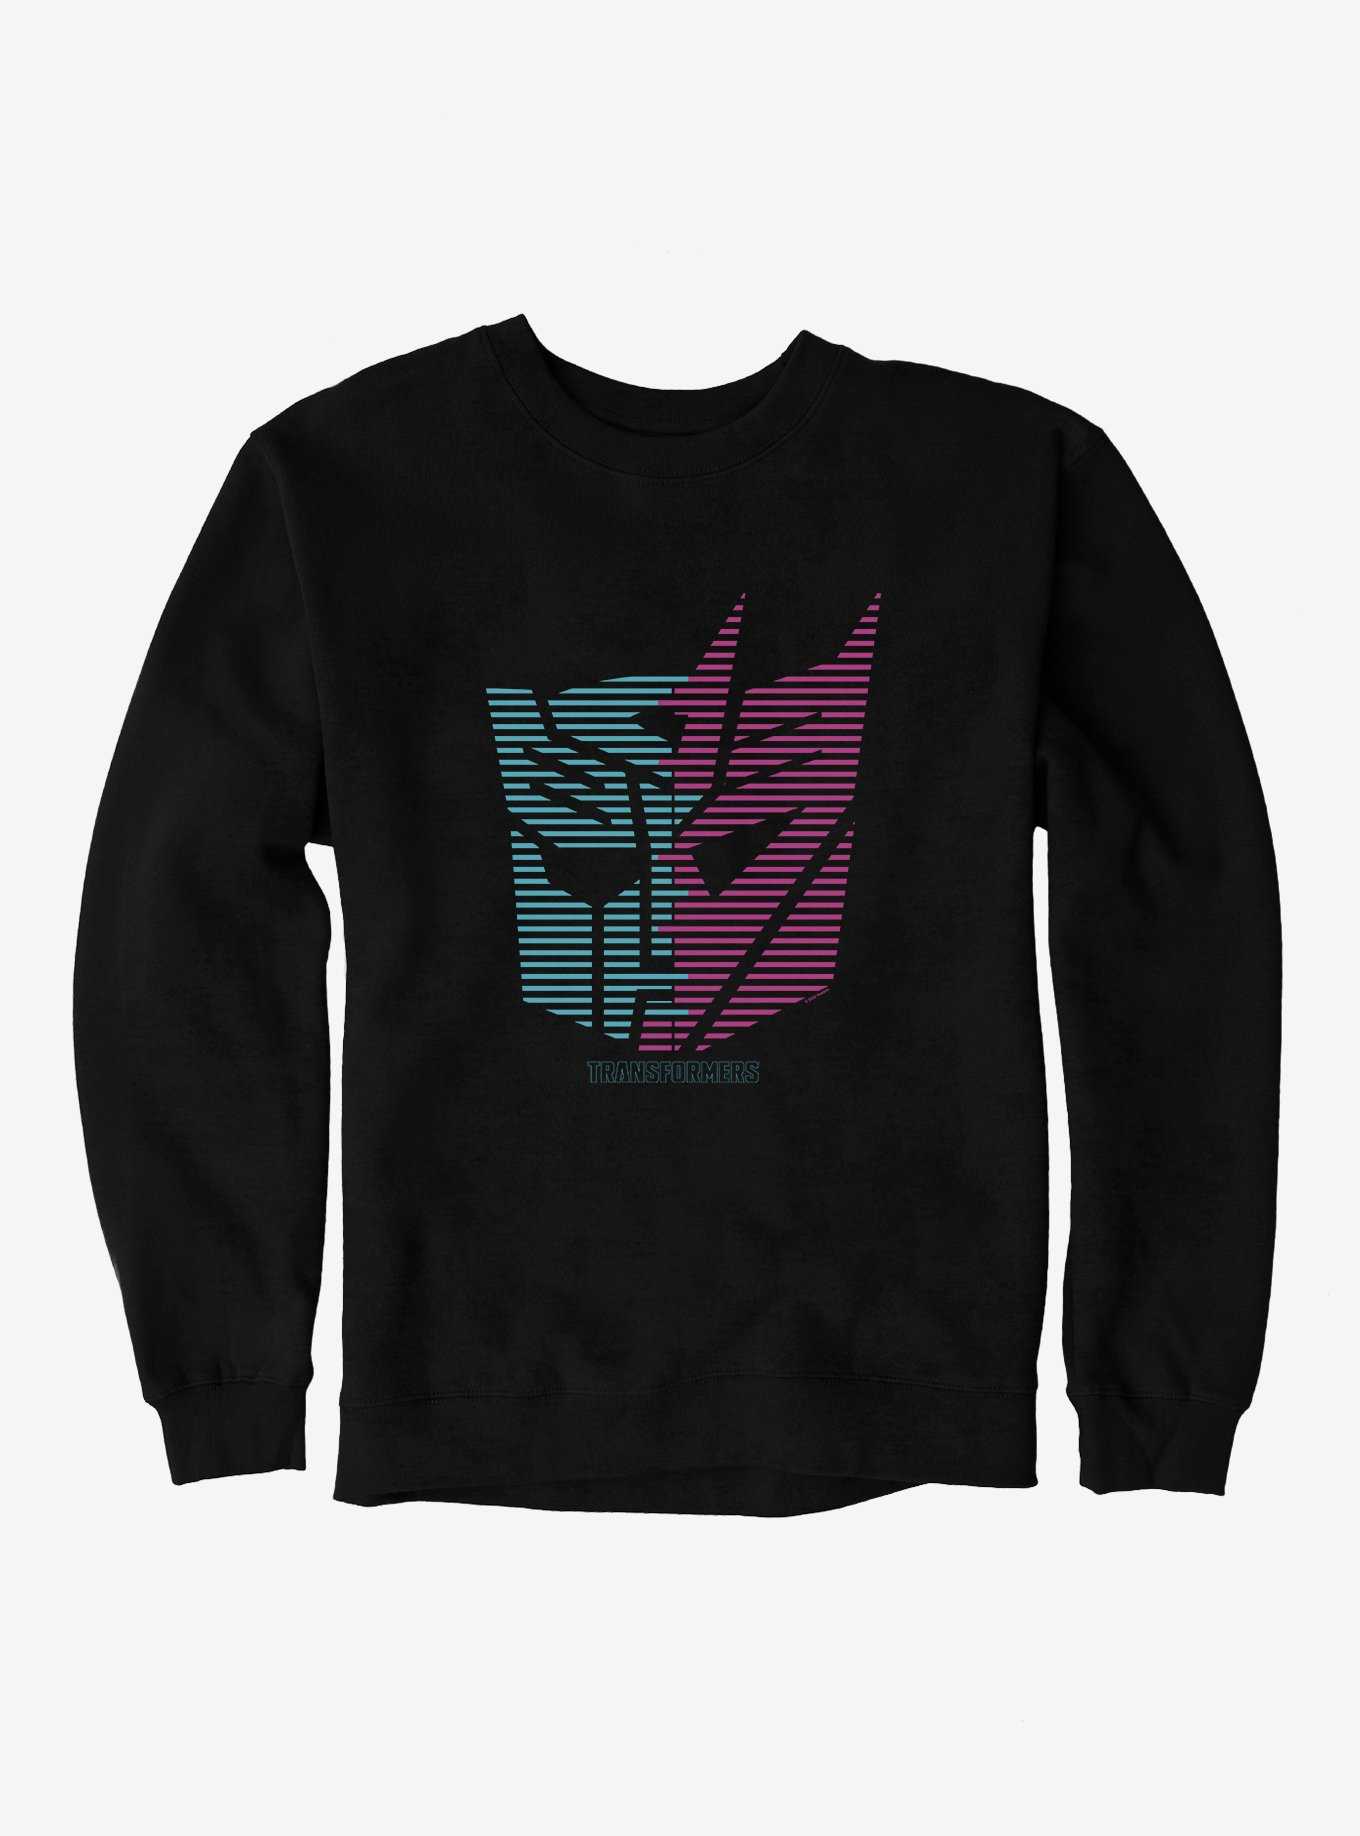 Transformers Autobot Decepticon Split Icon Sweatshirt, , hi-res